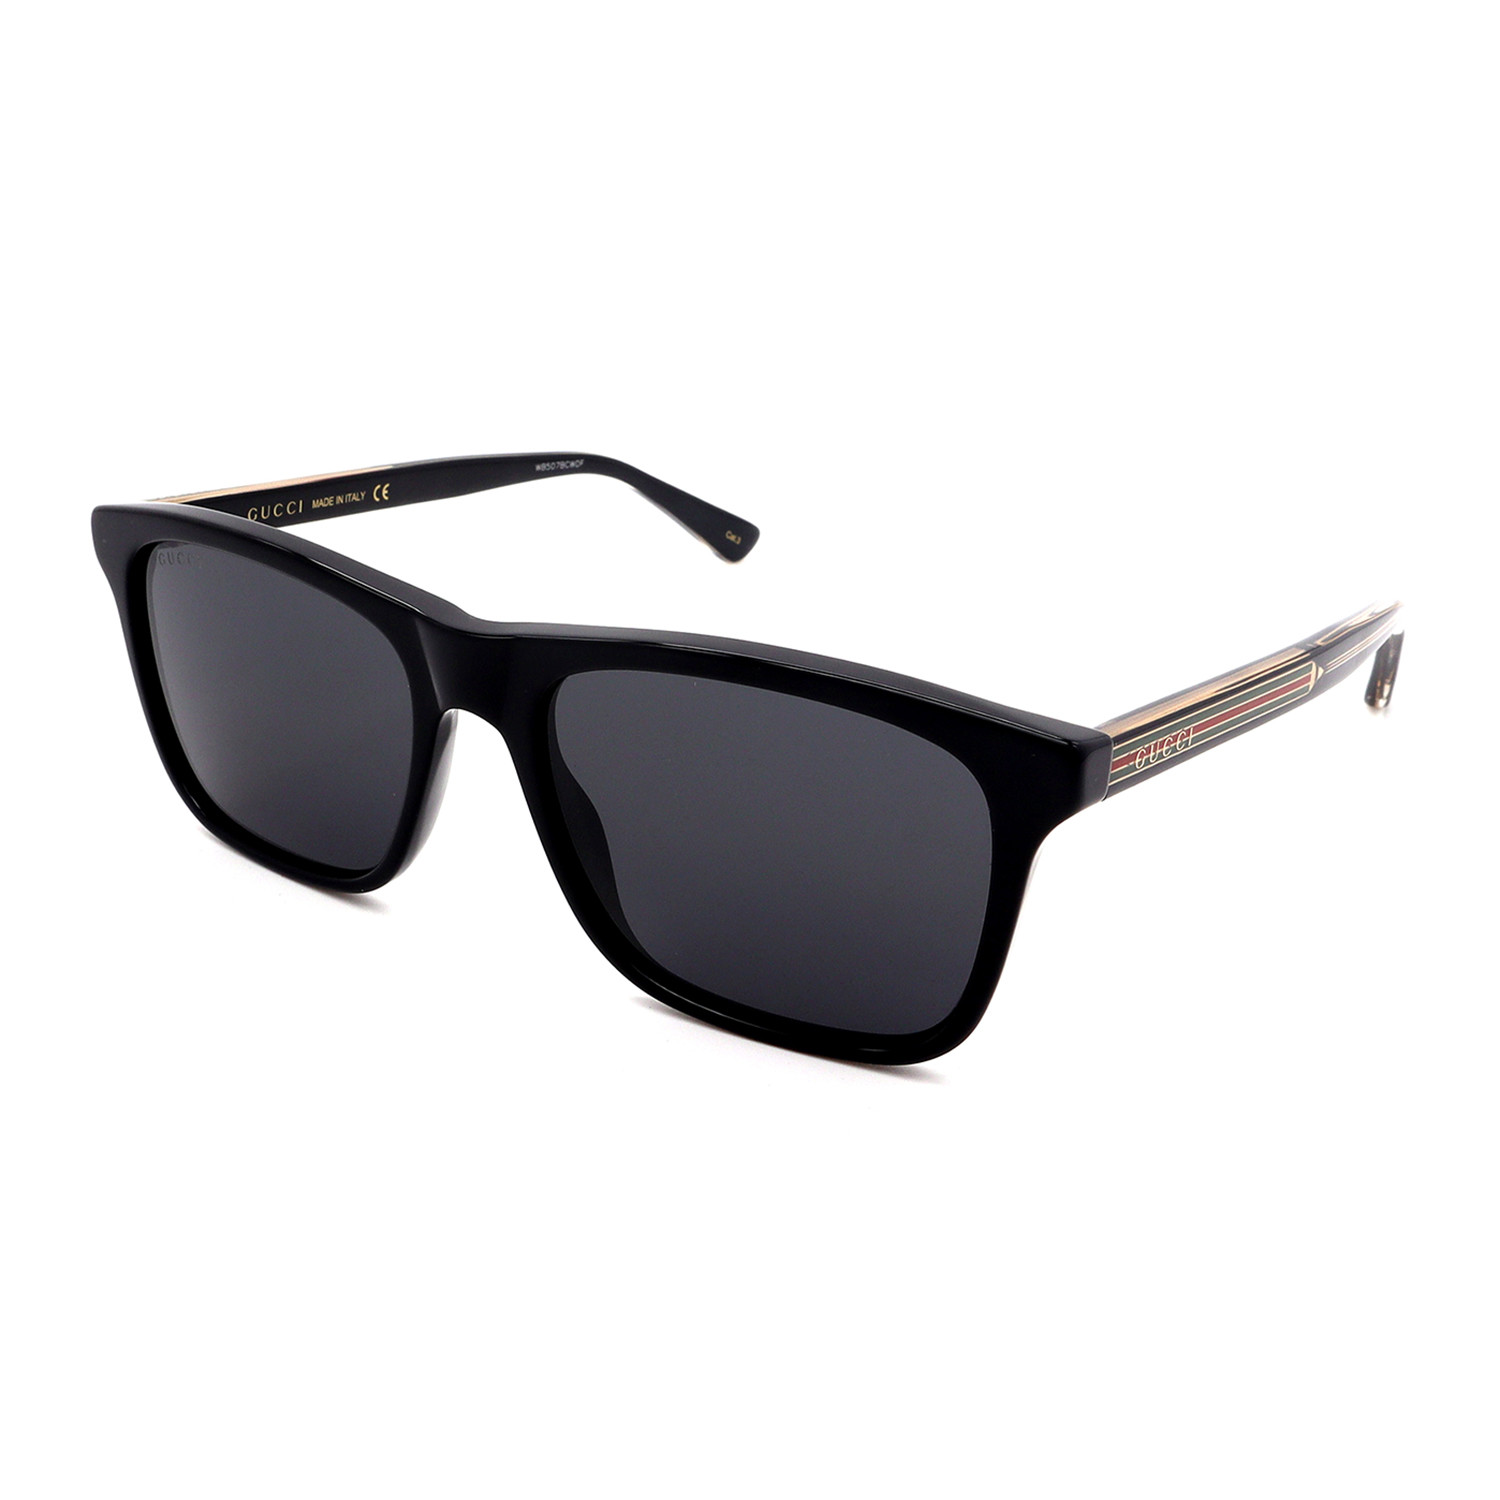 Men's GG0381S-007 Square Sunglasses // Black + Gray - Gucci - Touch of ...